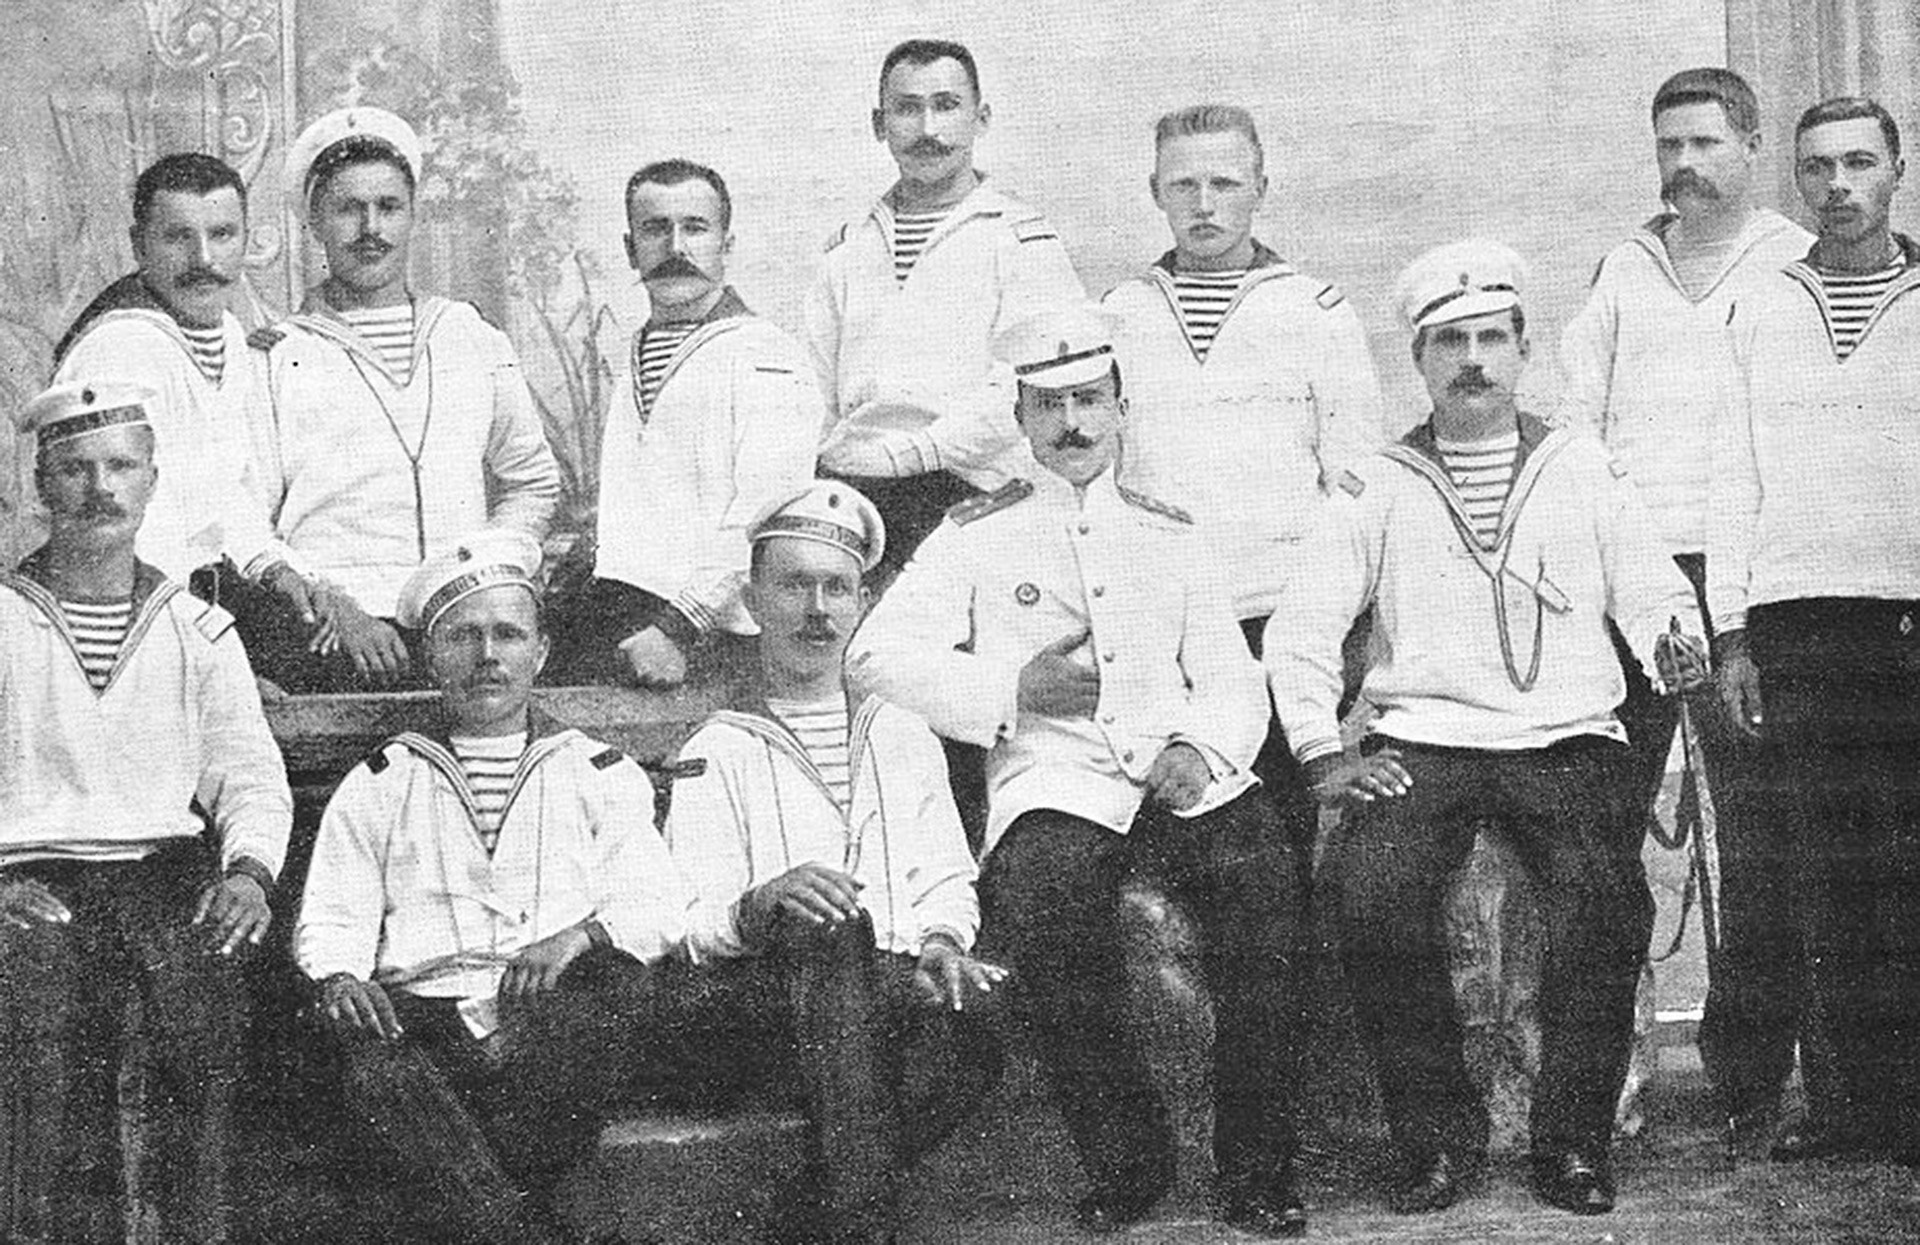 Algunos de los miembros de la tripulación del acorazado Potemkin. El teniente en el centro fue uno de los oficiales ejecutado por los rebeldes.